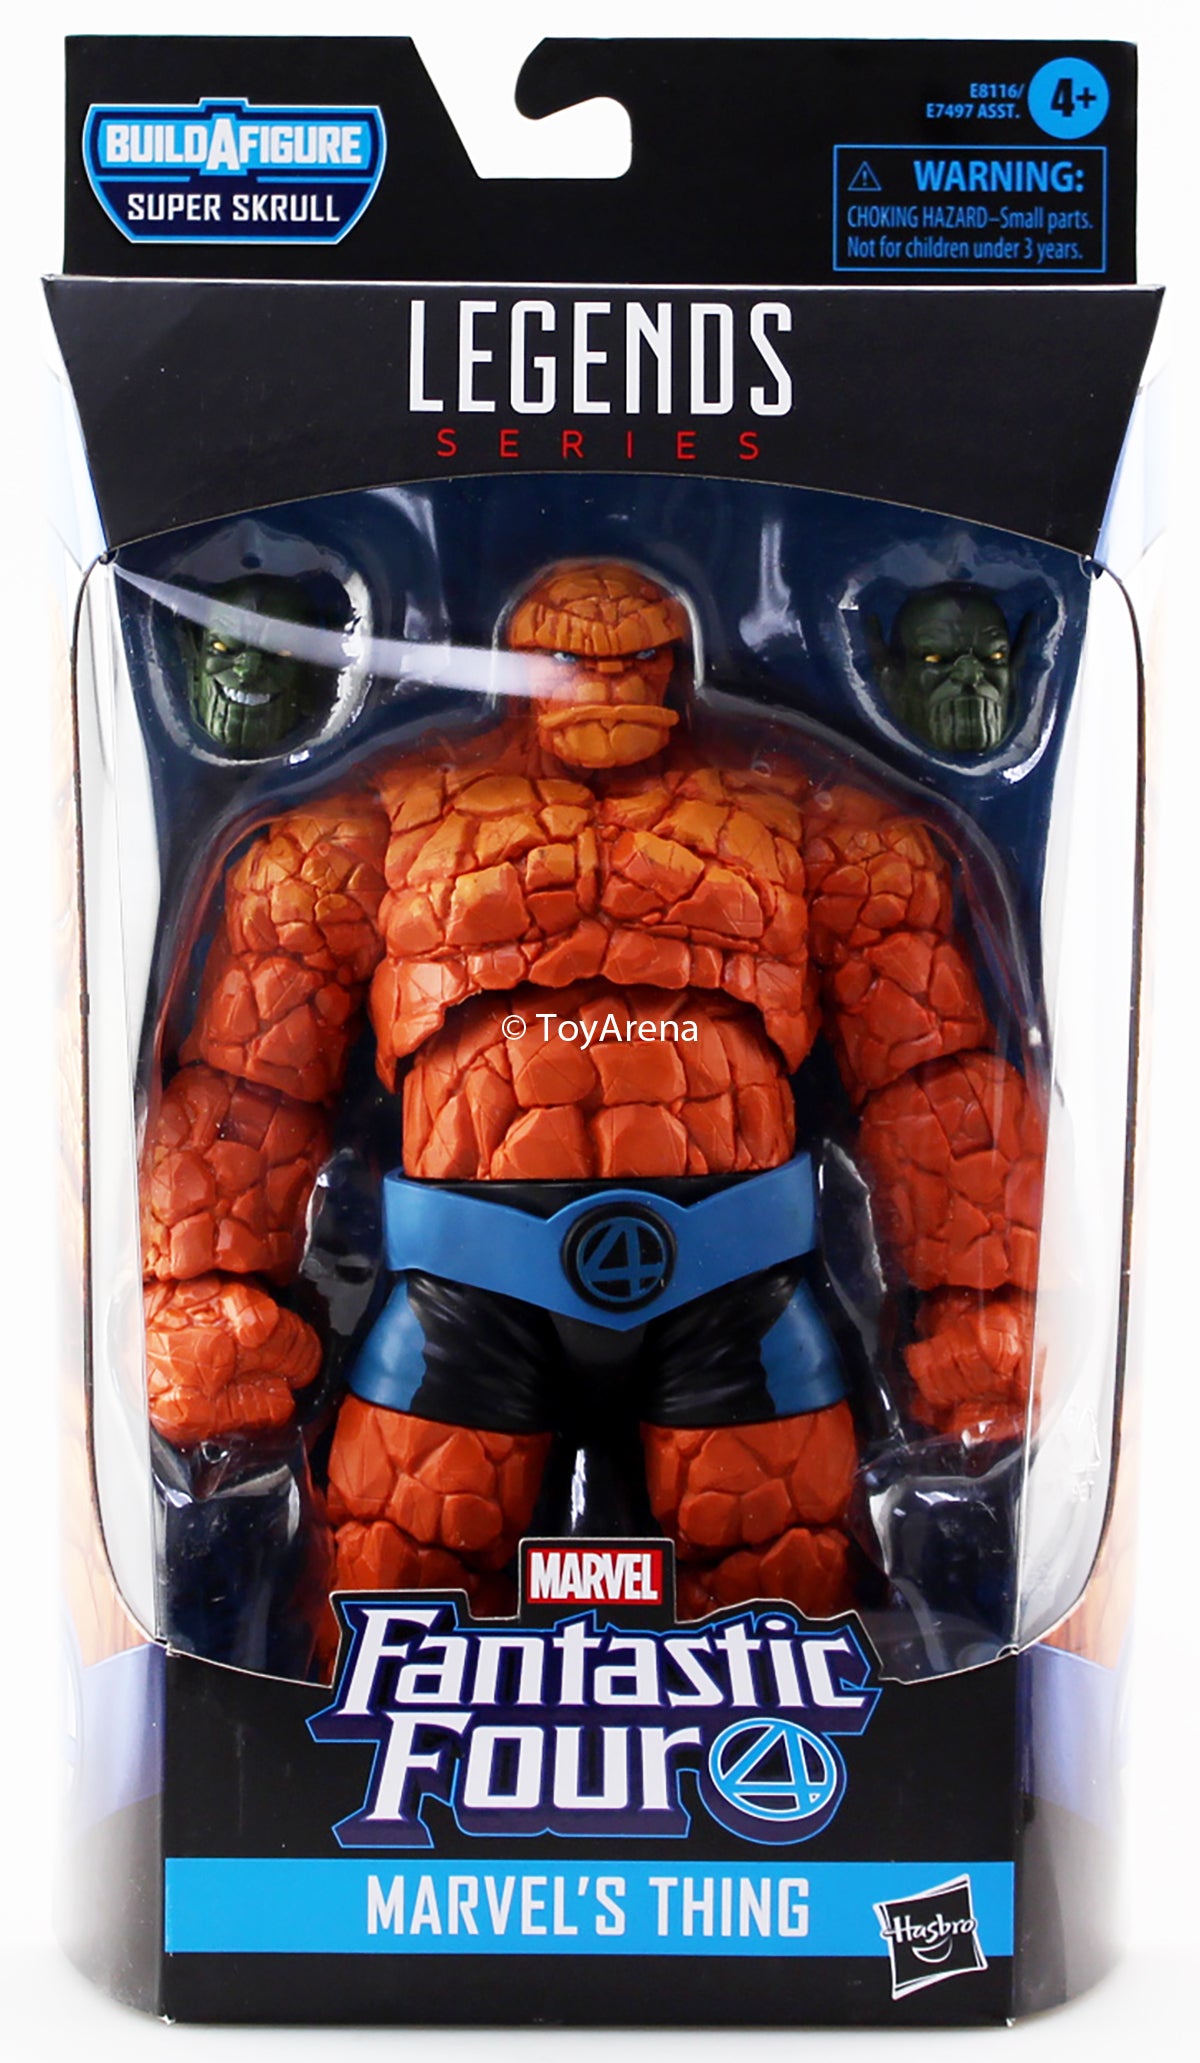 Marvel Legends Fantastic Four The Thing BAF Super Skrull Action Figures